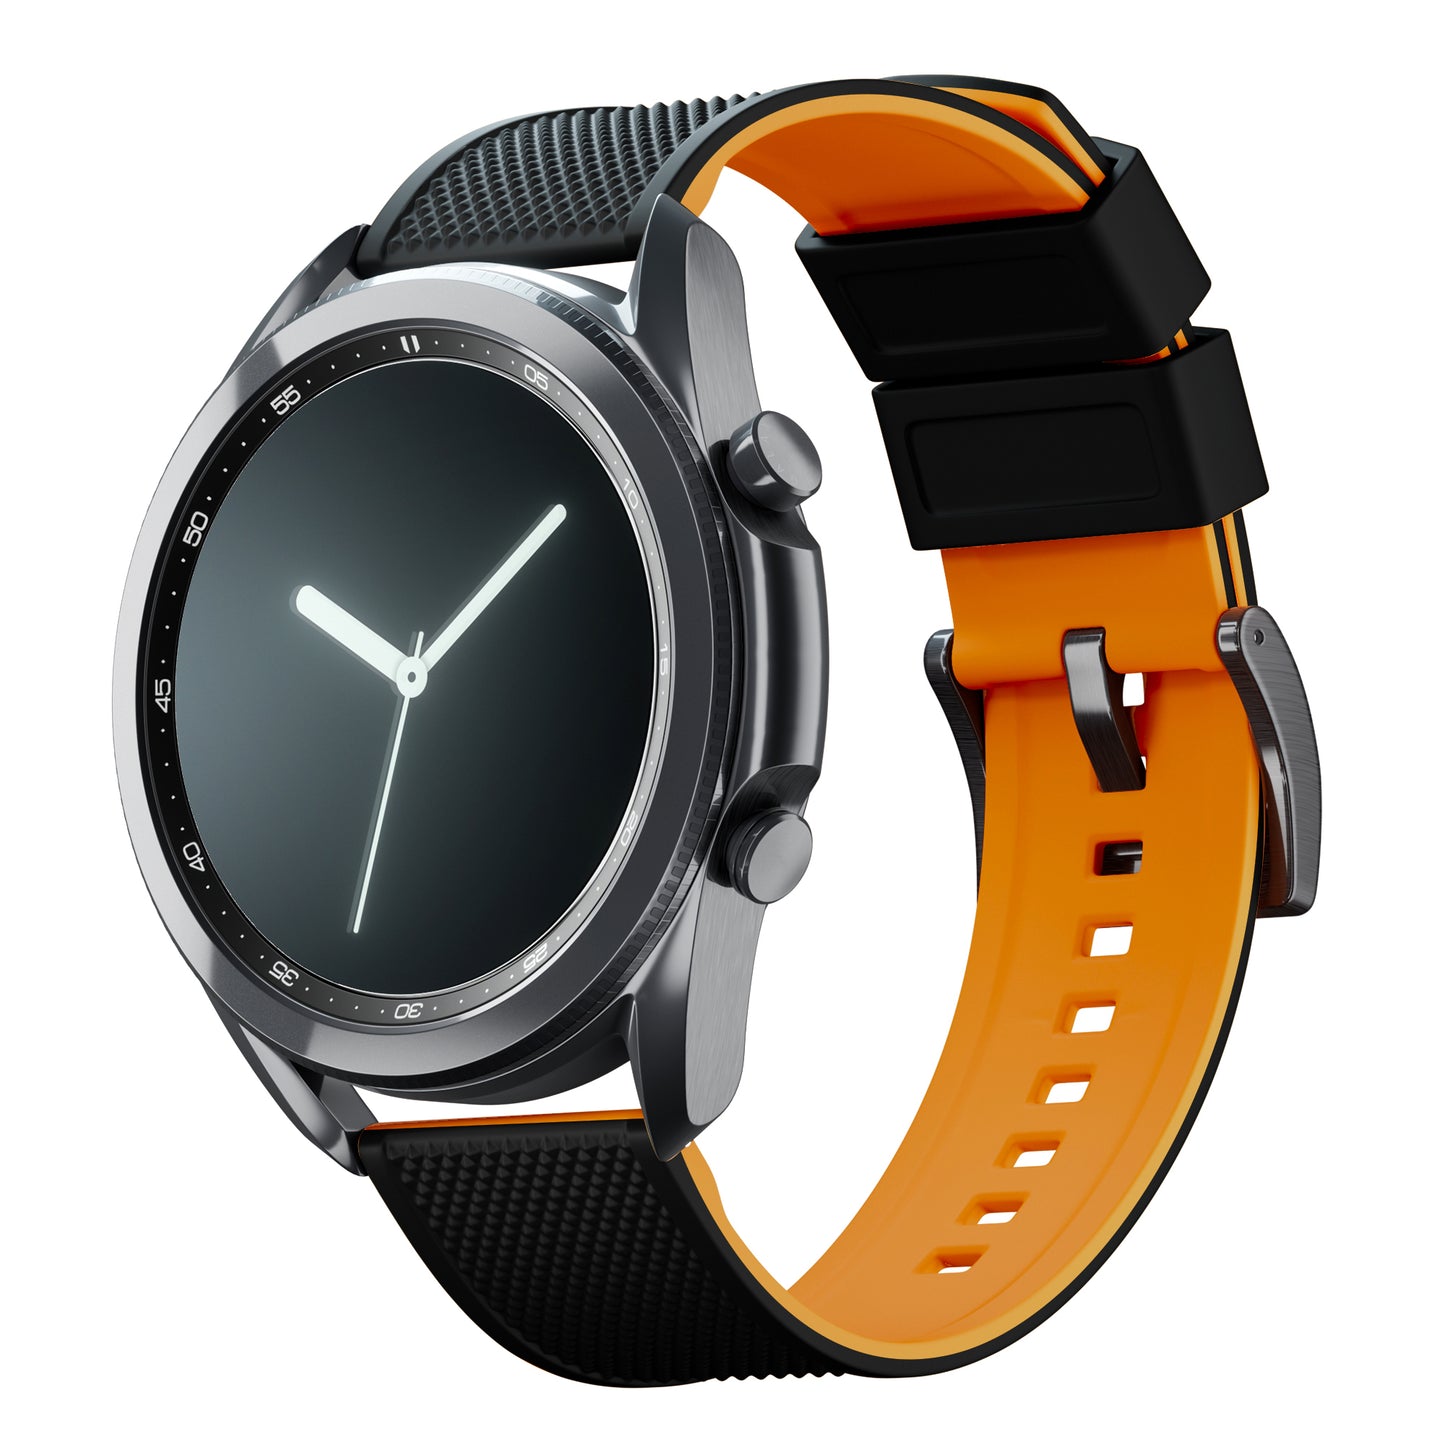 Samsung Galaxy Watch3 | Elite Silicone | Black Top / Pumpkin Orange Bottom - Barton Watch Bands